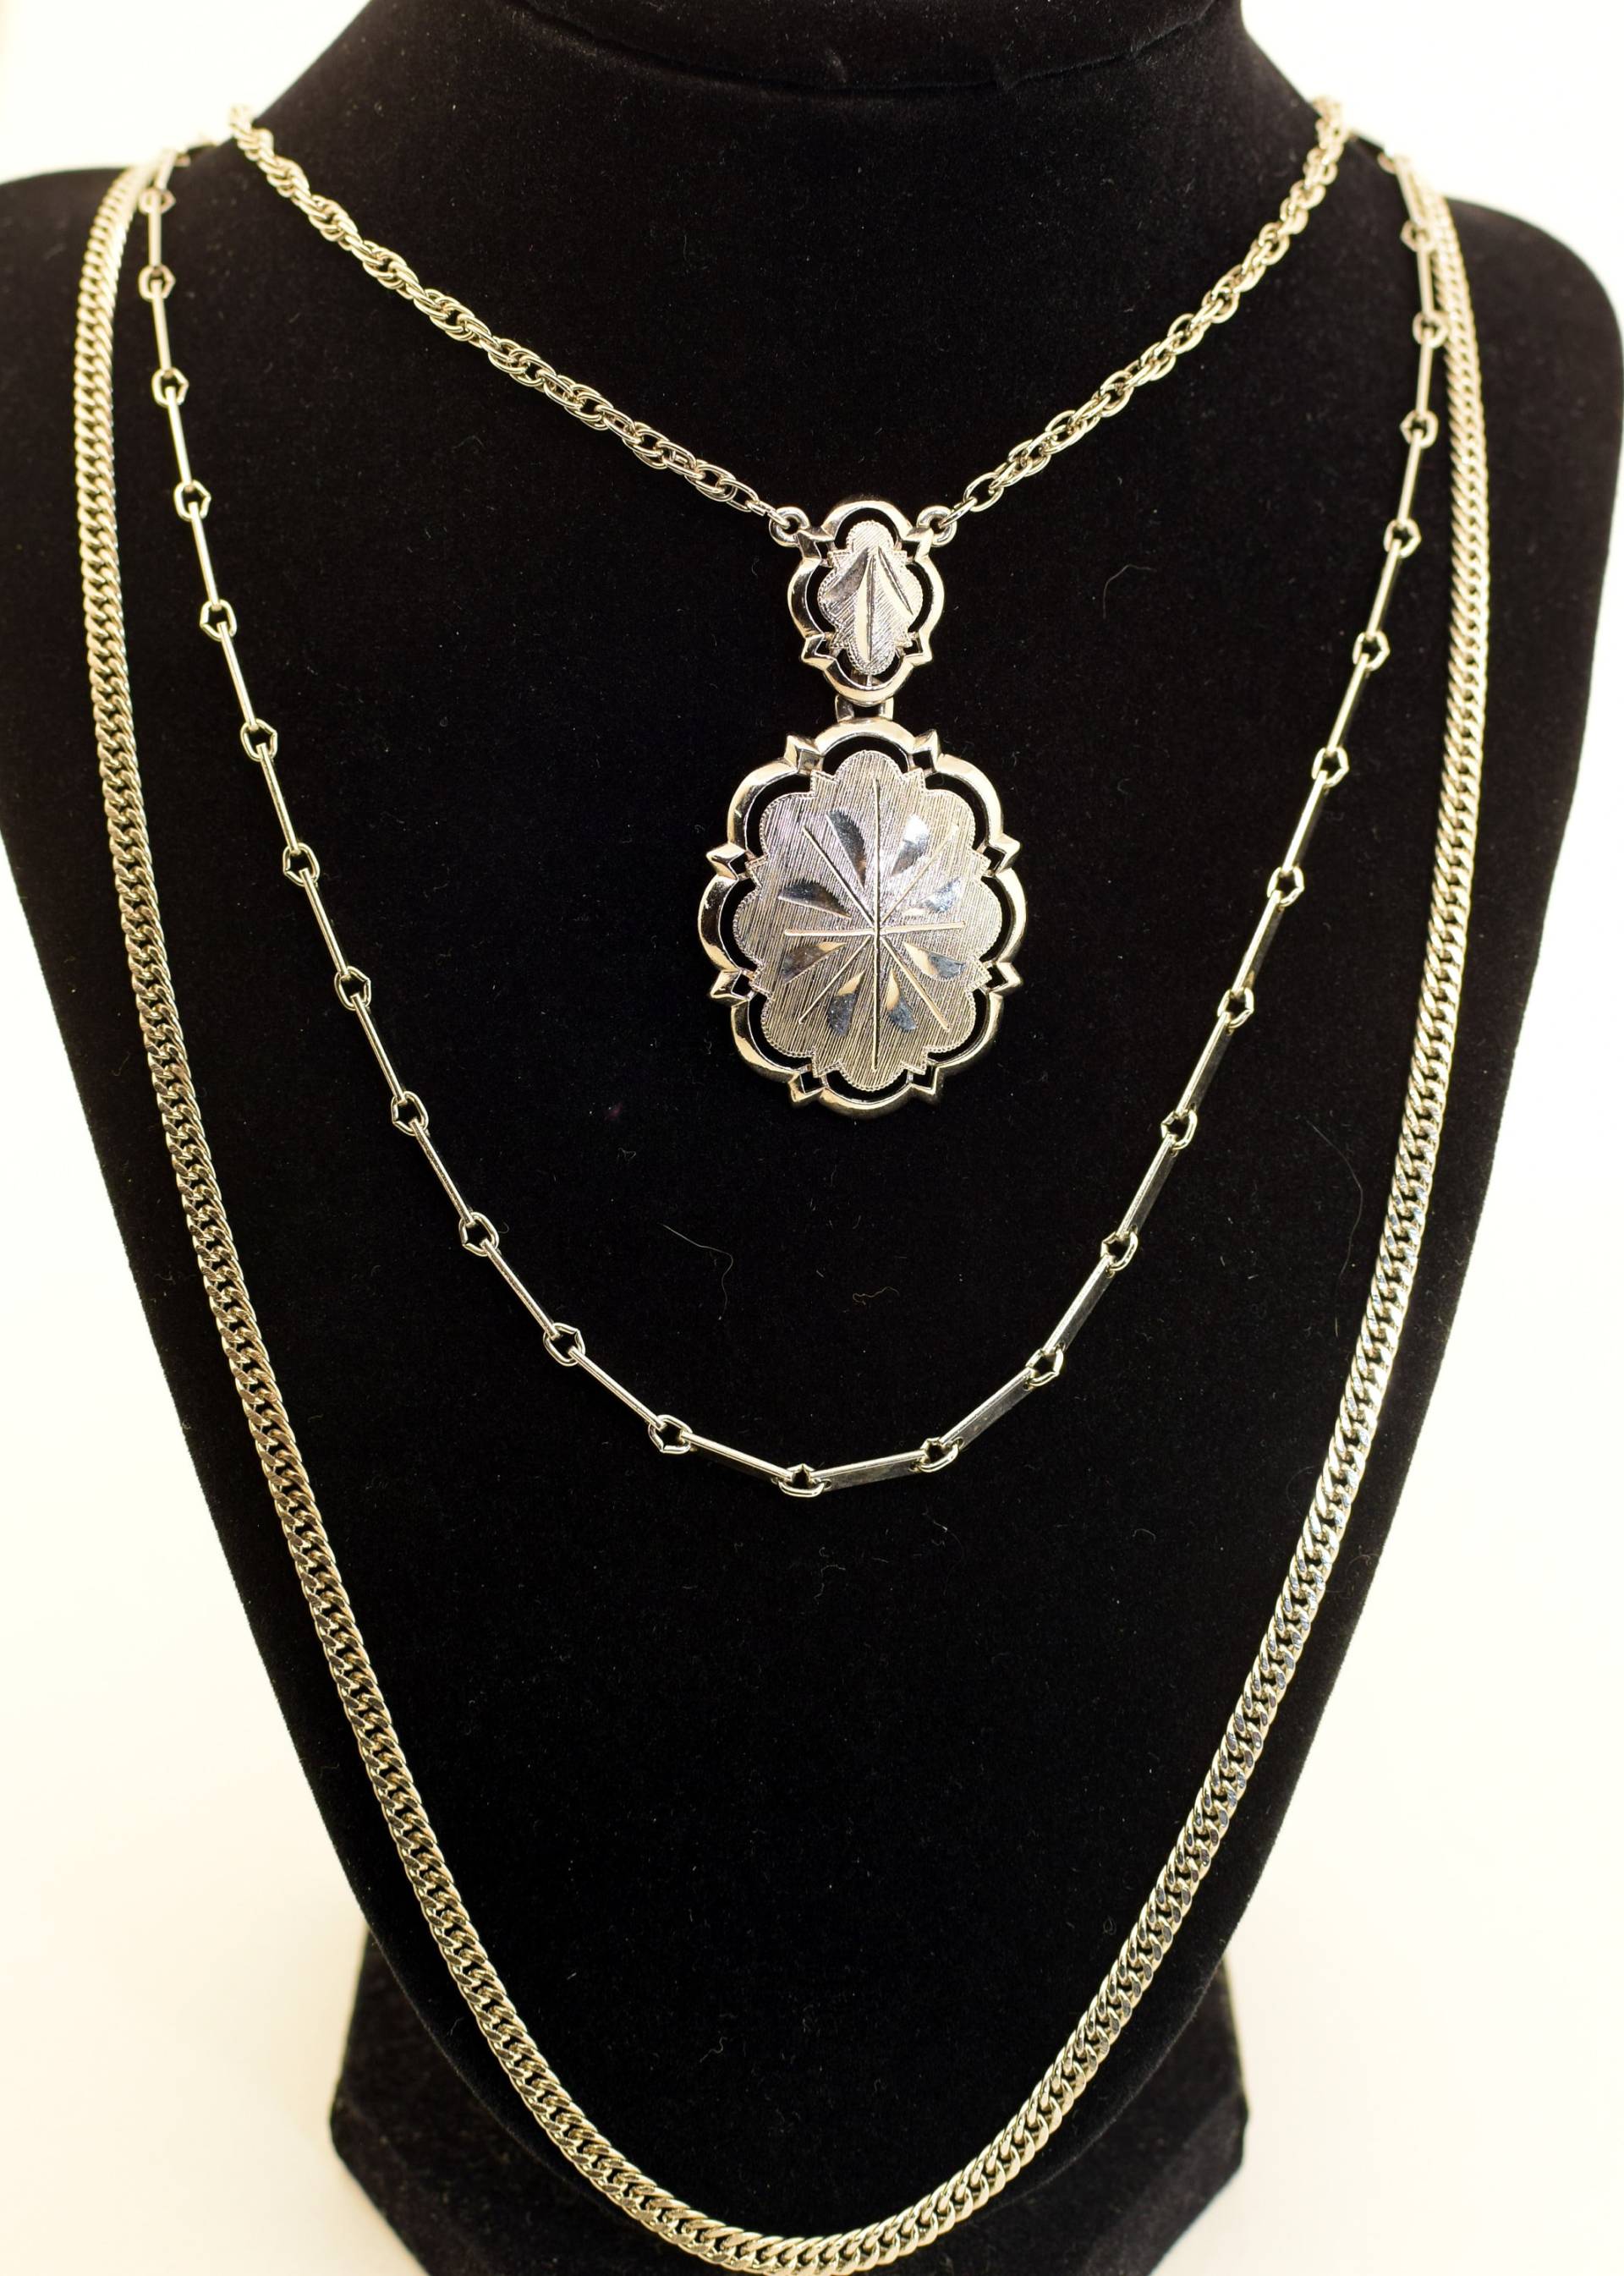 Dreireihige Halskette Aus Silberfarbenem Metall von EvelynsAntiqueFinds